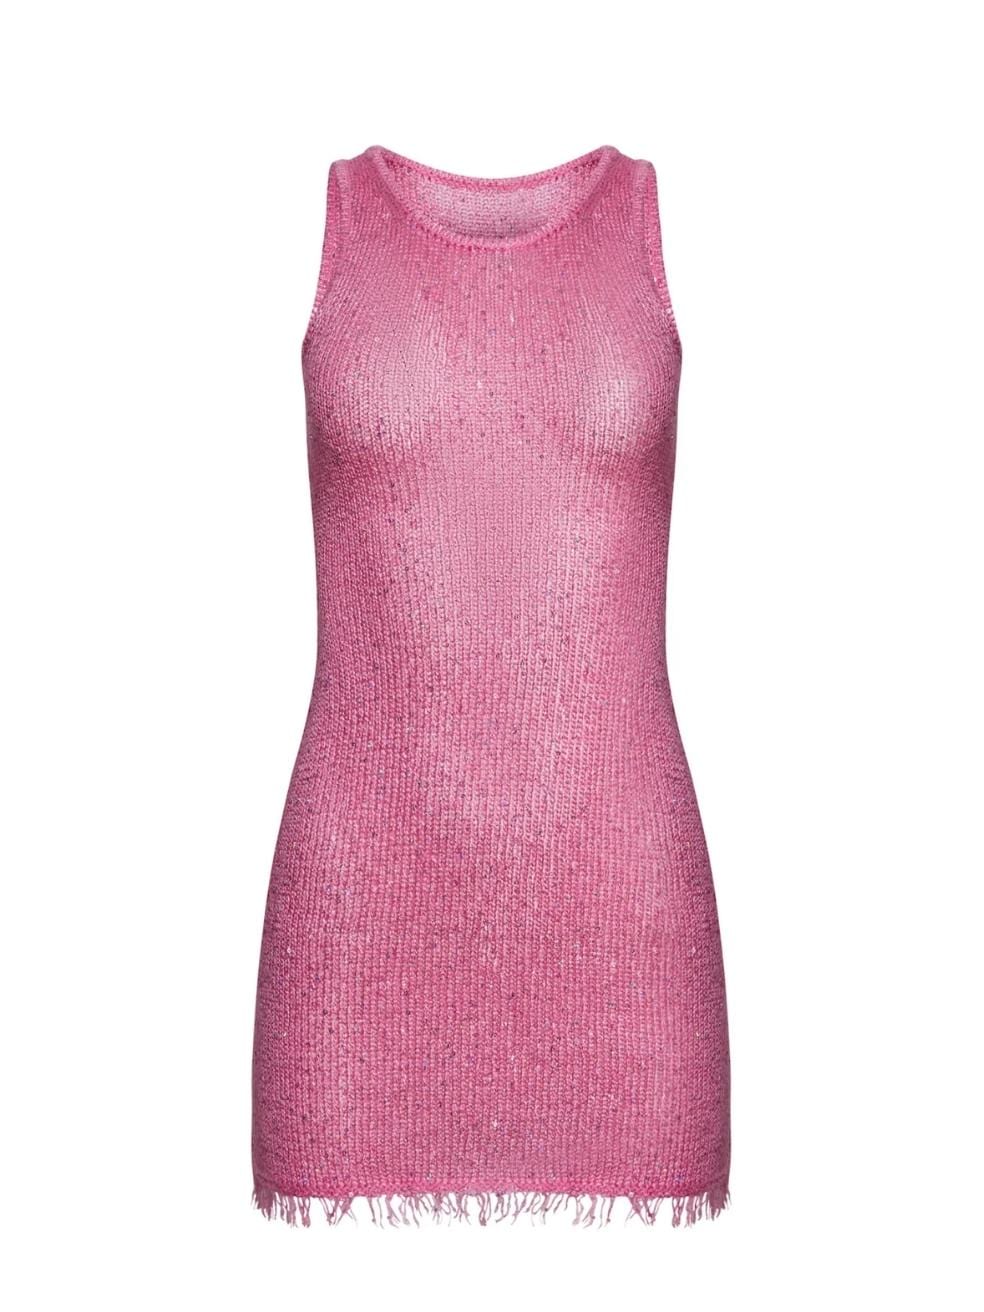 Natalia Mini Dress in Azalea Sequin – Bipty